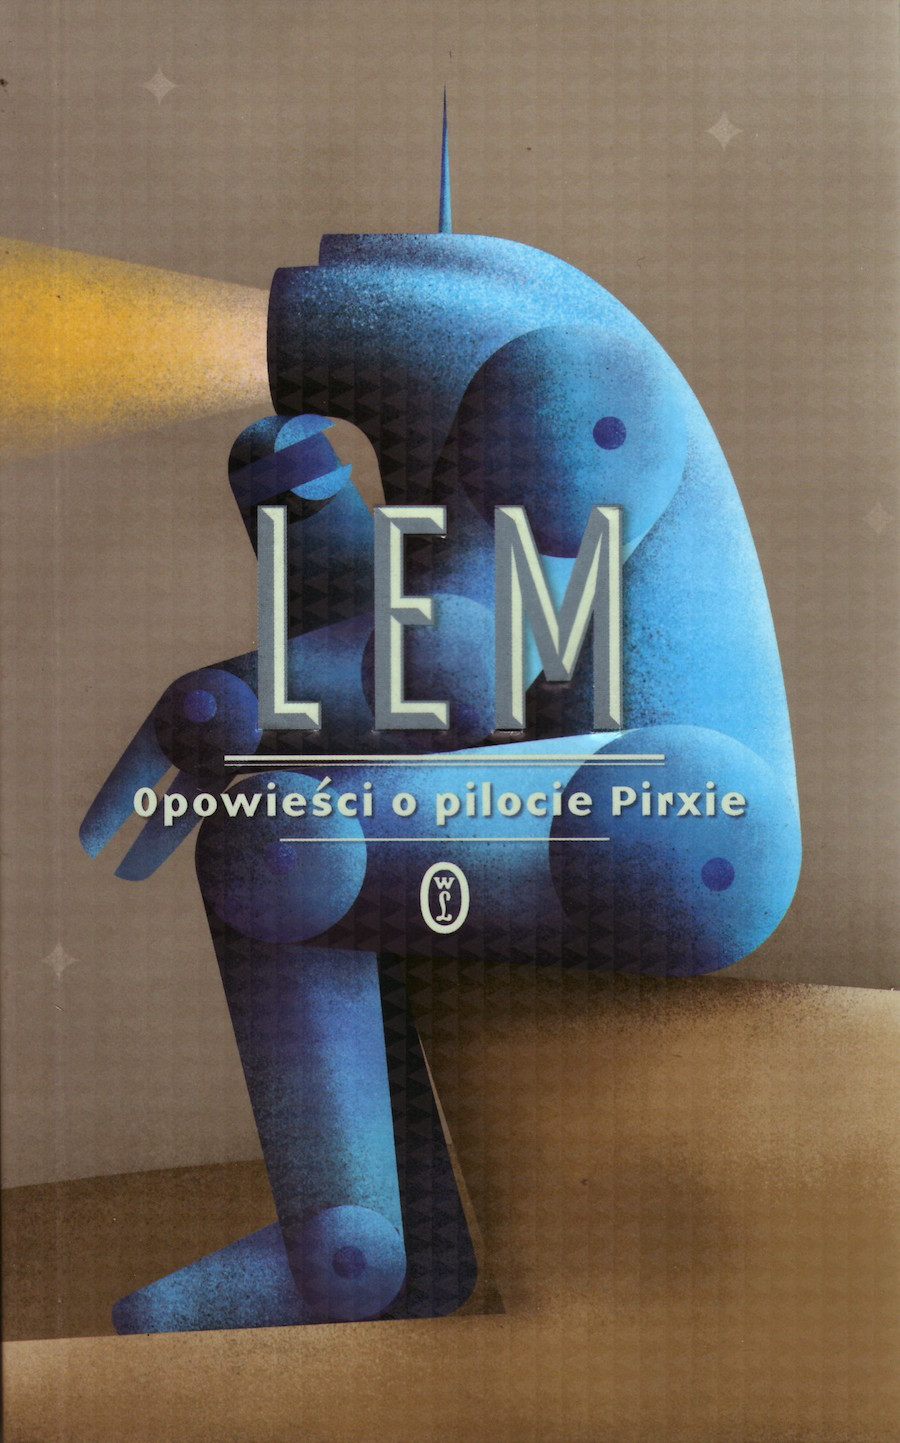 Stanisław Lem "Opowieści o pilocie Pirxie" WL, Kraków 2012